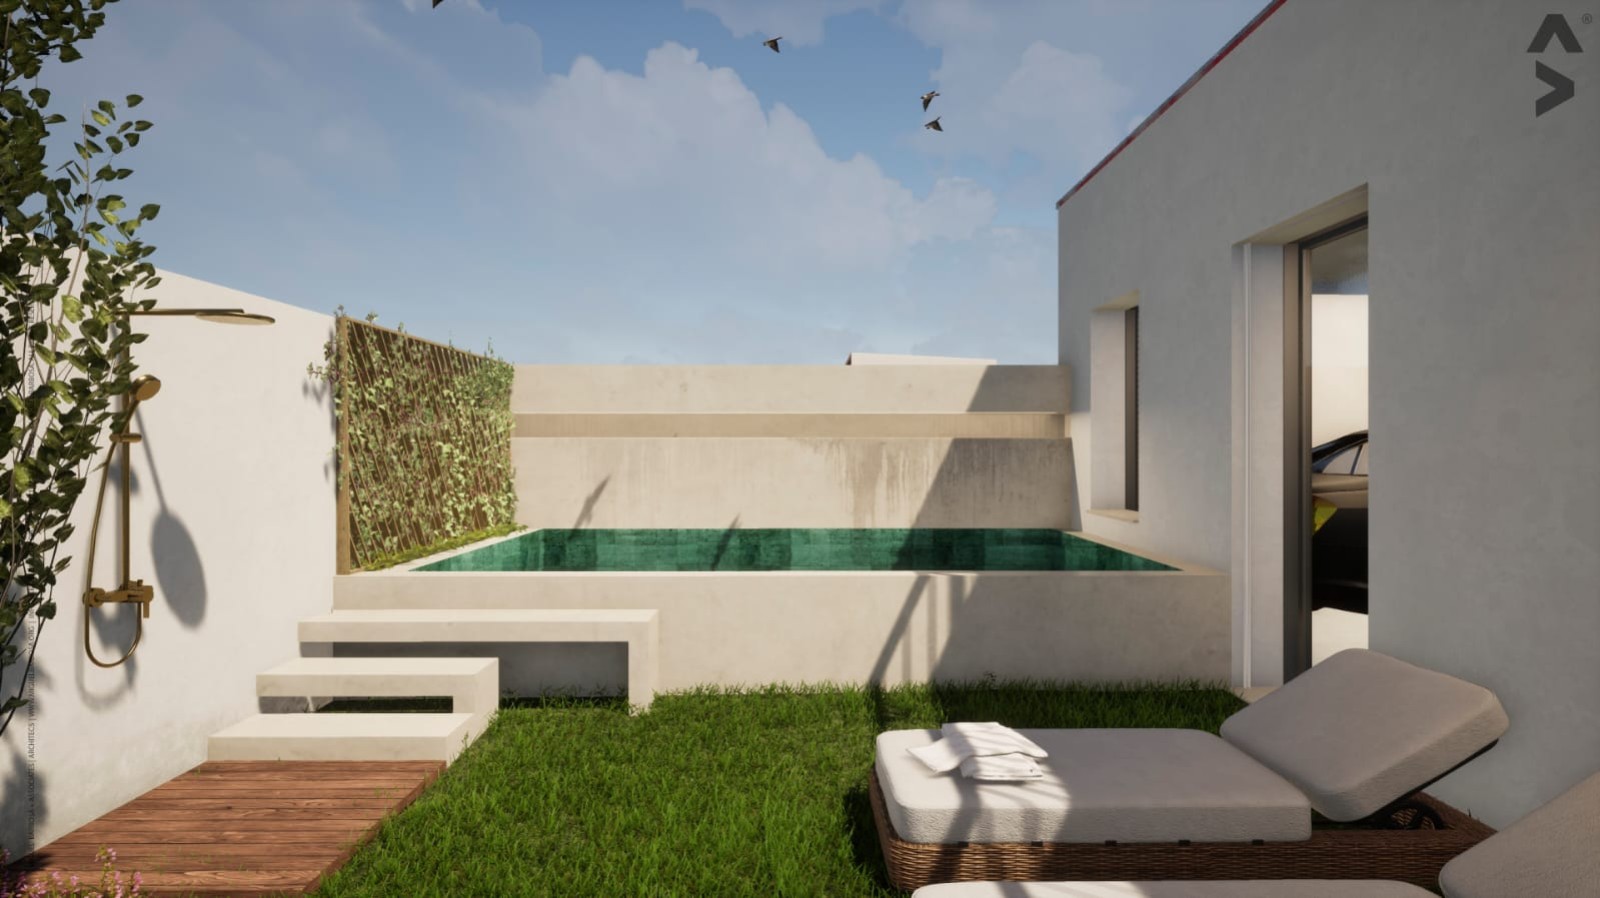 Villa mit 3 Schlafzimmern und Balkonen in Strandnähe, zu verkaufen, Gaia, Portugal_243516